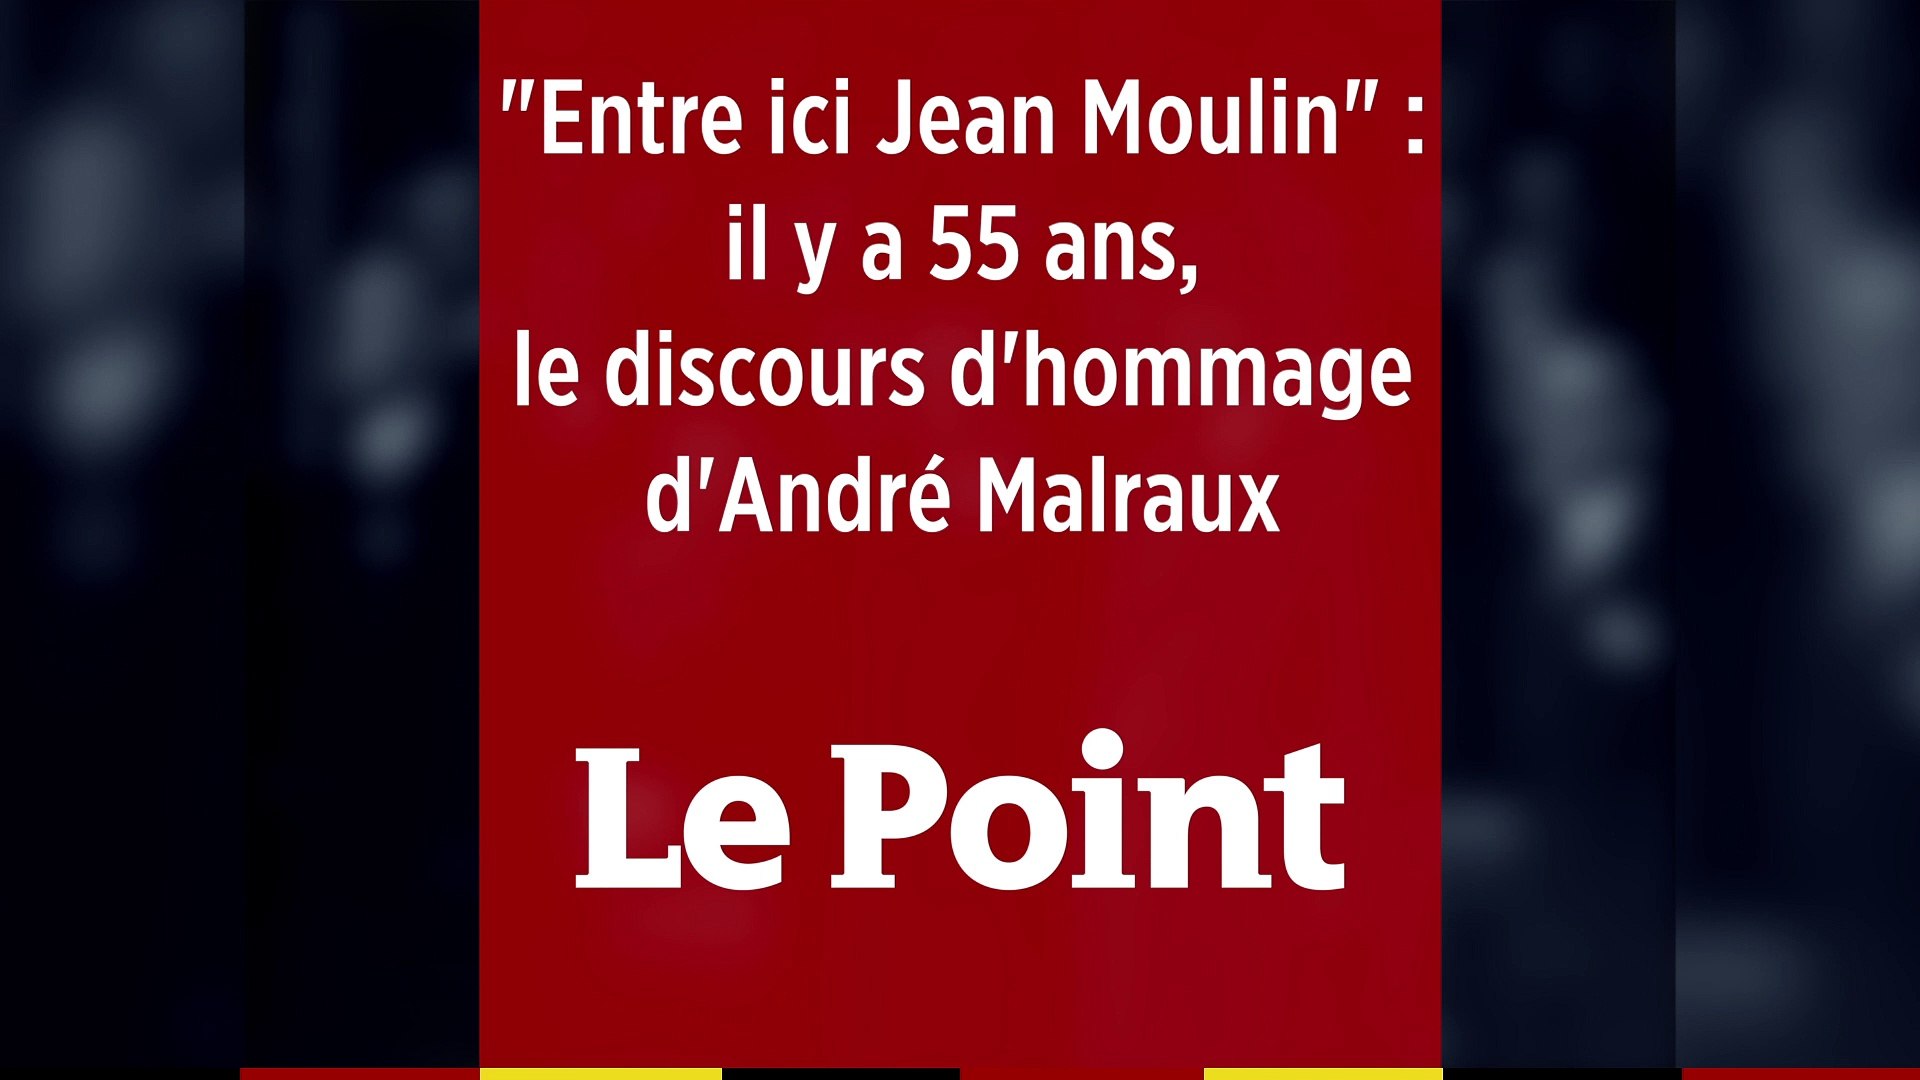 Entre ici, Jean Moulin" : il y a 55 ans, l'hommage d'André Malraux - Vidéo  Dailymotion